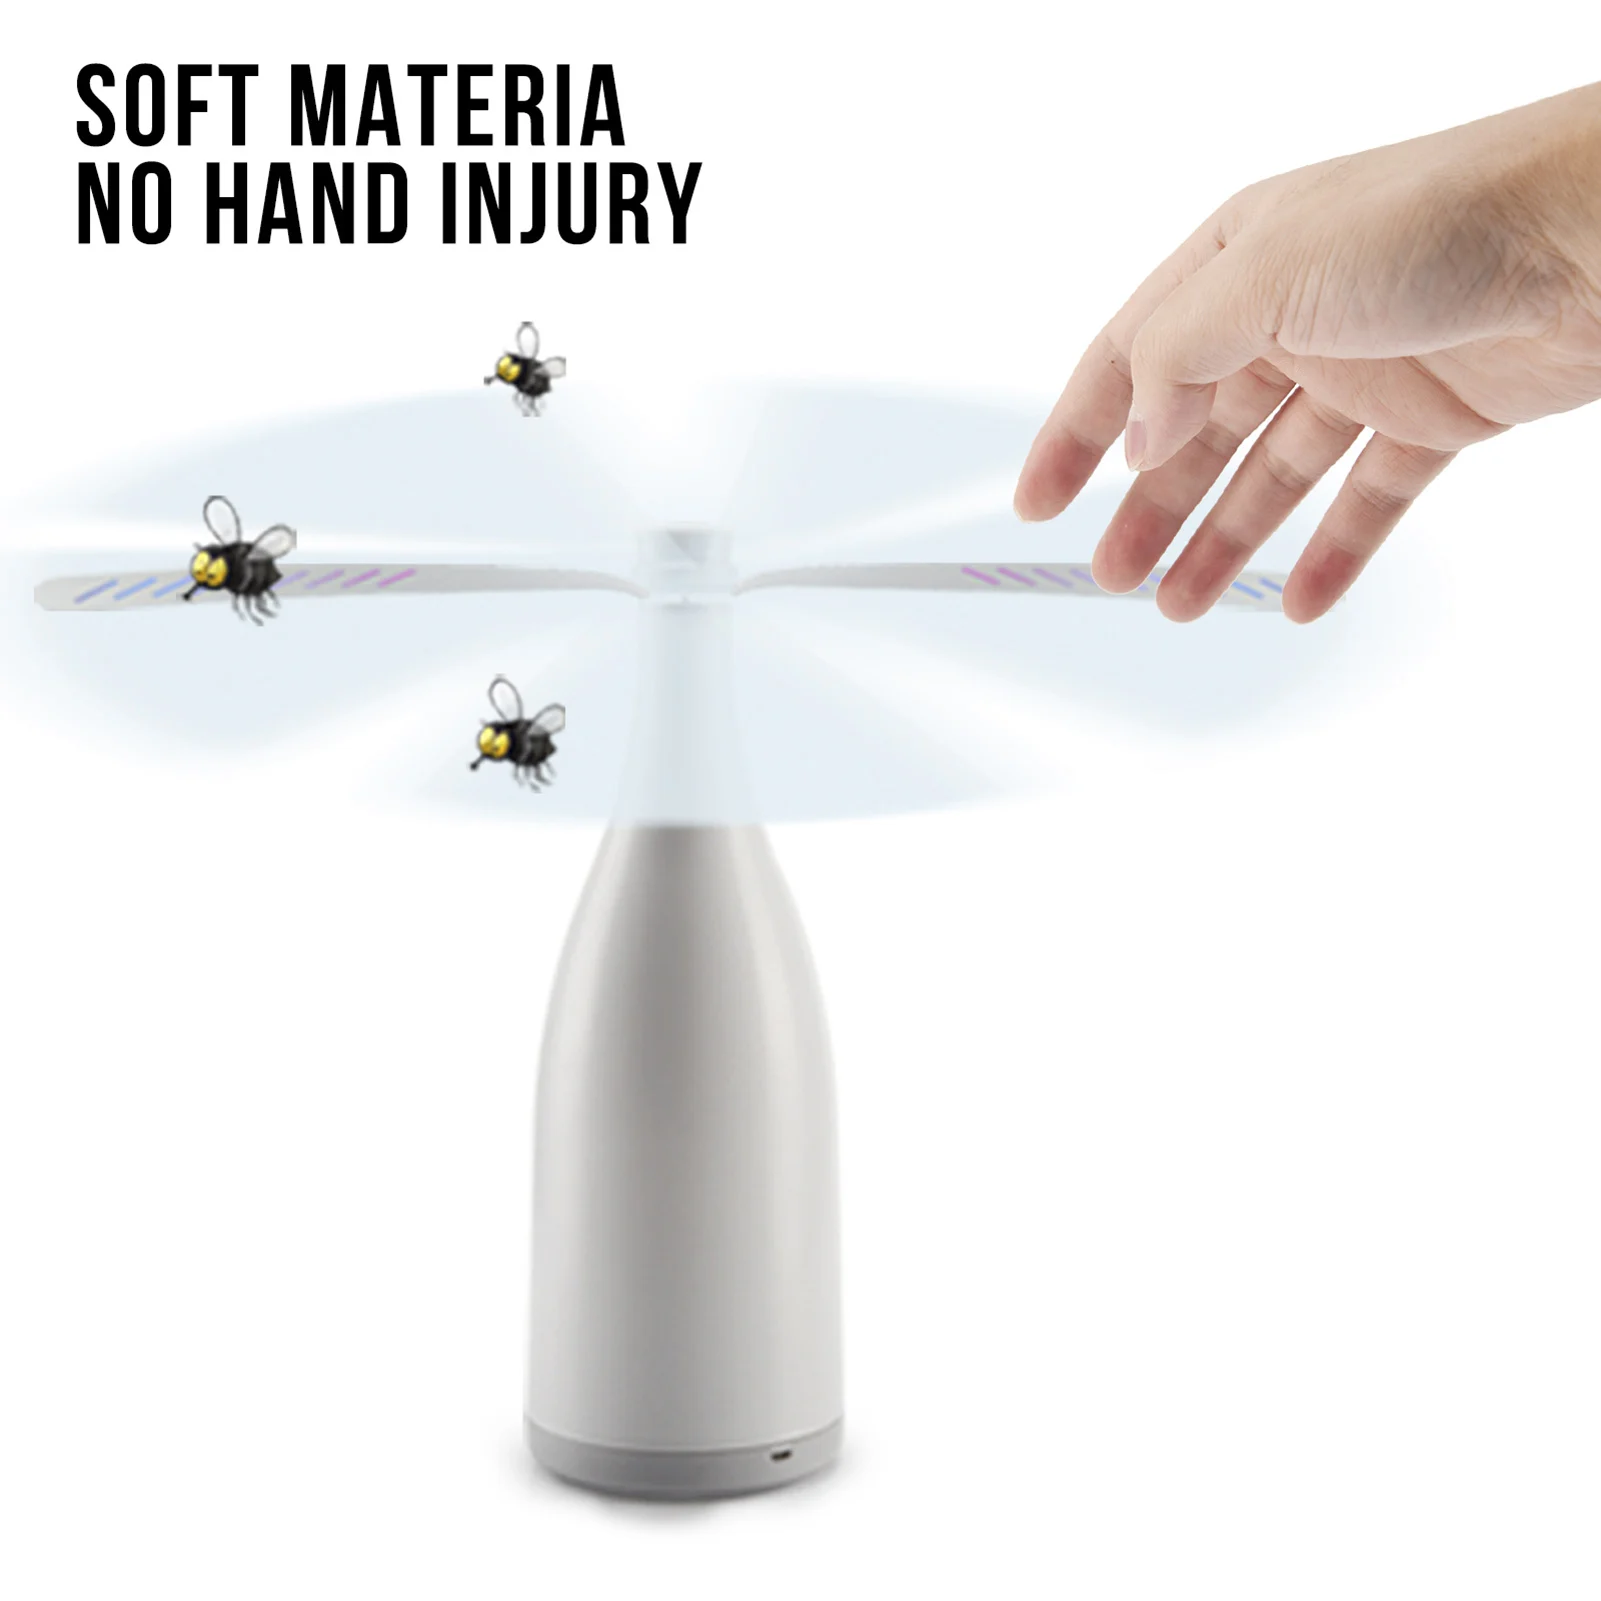 

Электронный Отпугиватель вредителей отпугиватель мух Fan для помещений и улицы, защищает от комаров/мух/насекомых